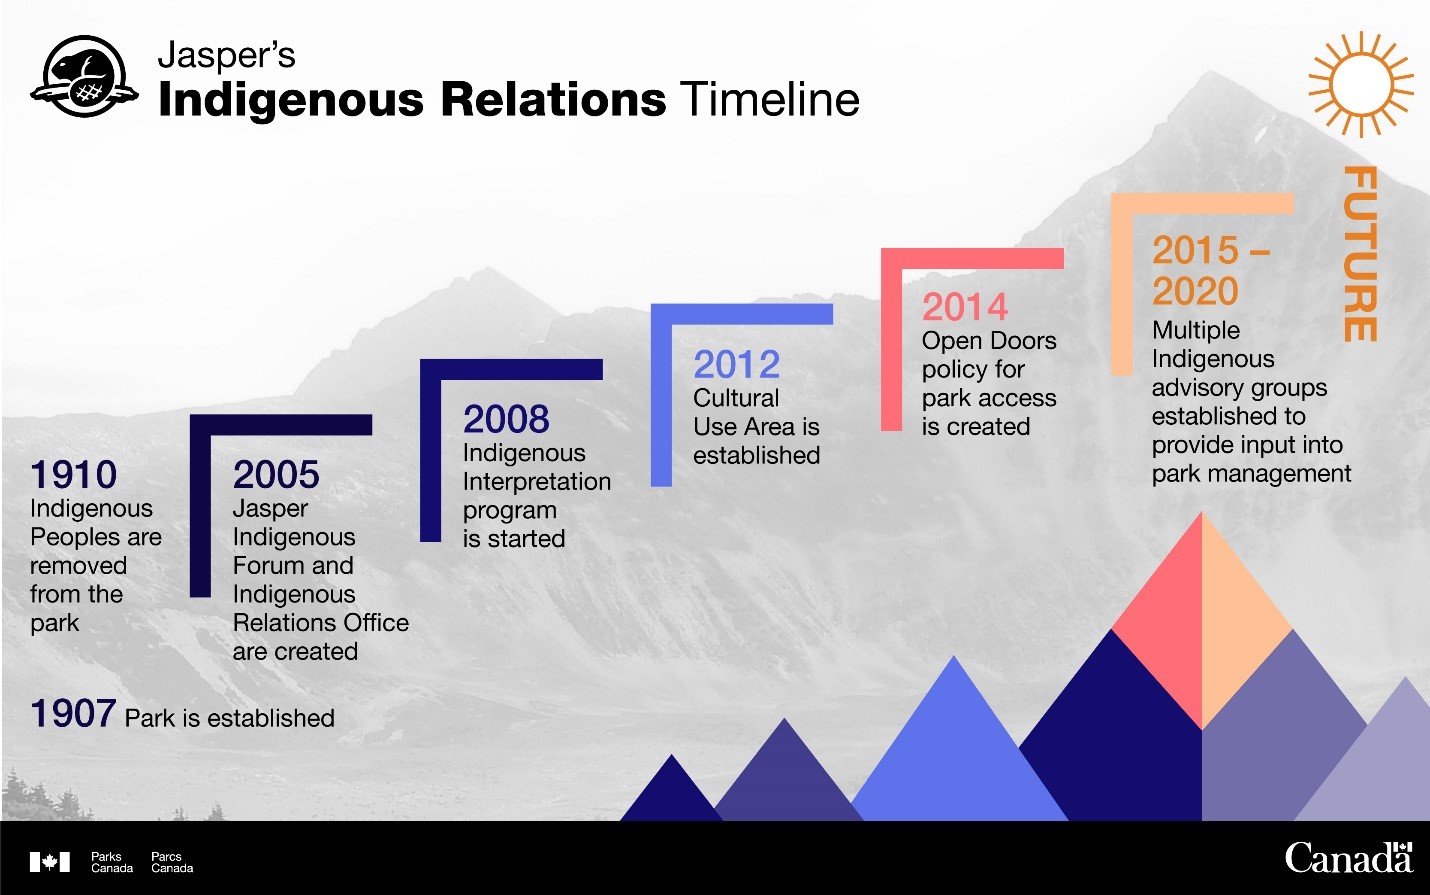 Jasper's Indigenous Relations - Timeline. Description follows